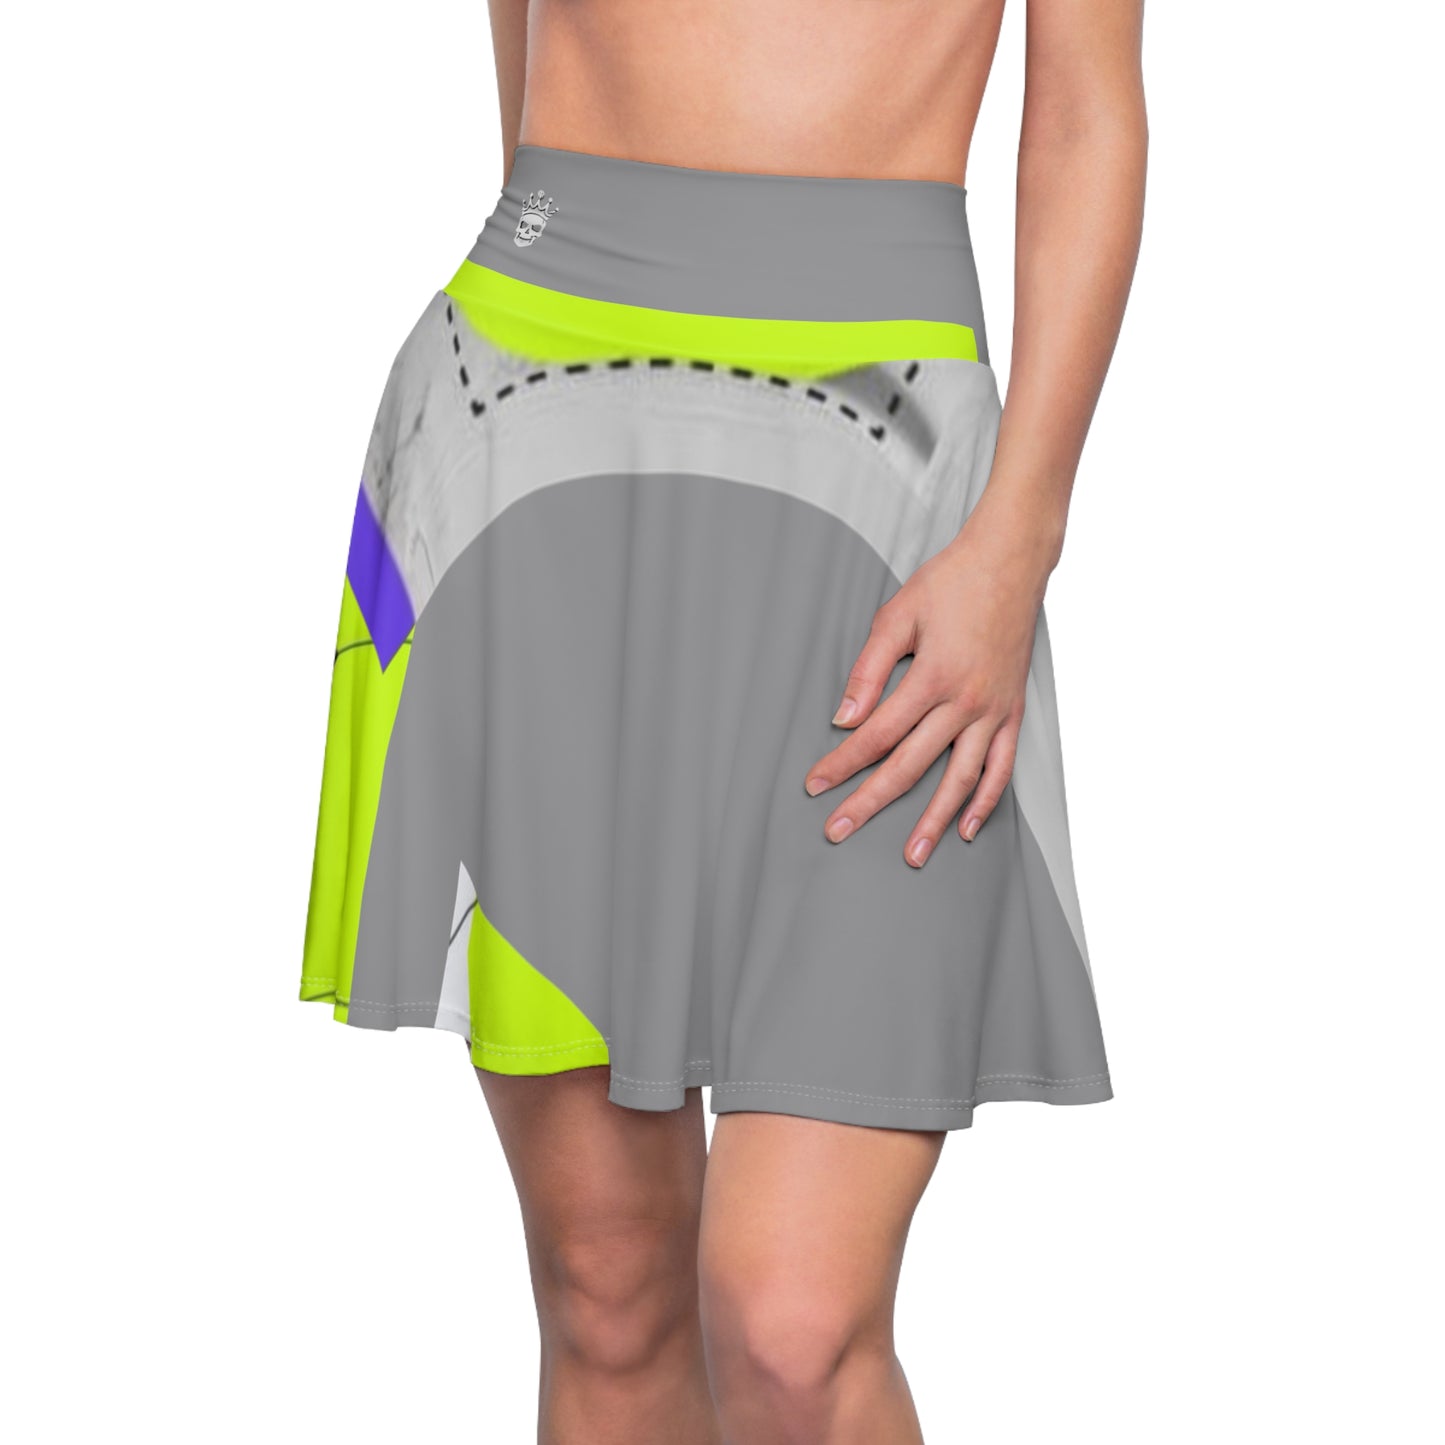 Lightyear Buzz Skirt